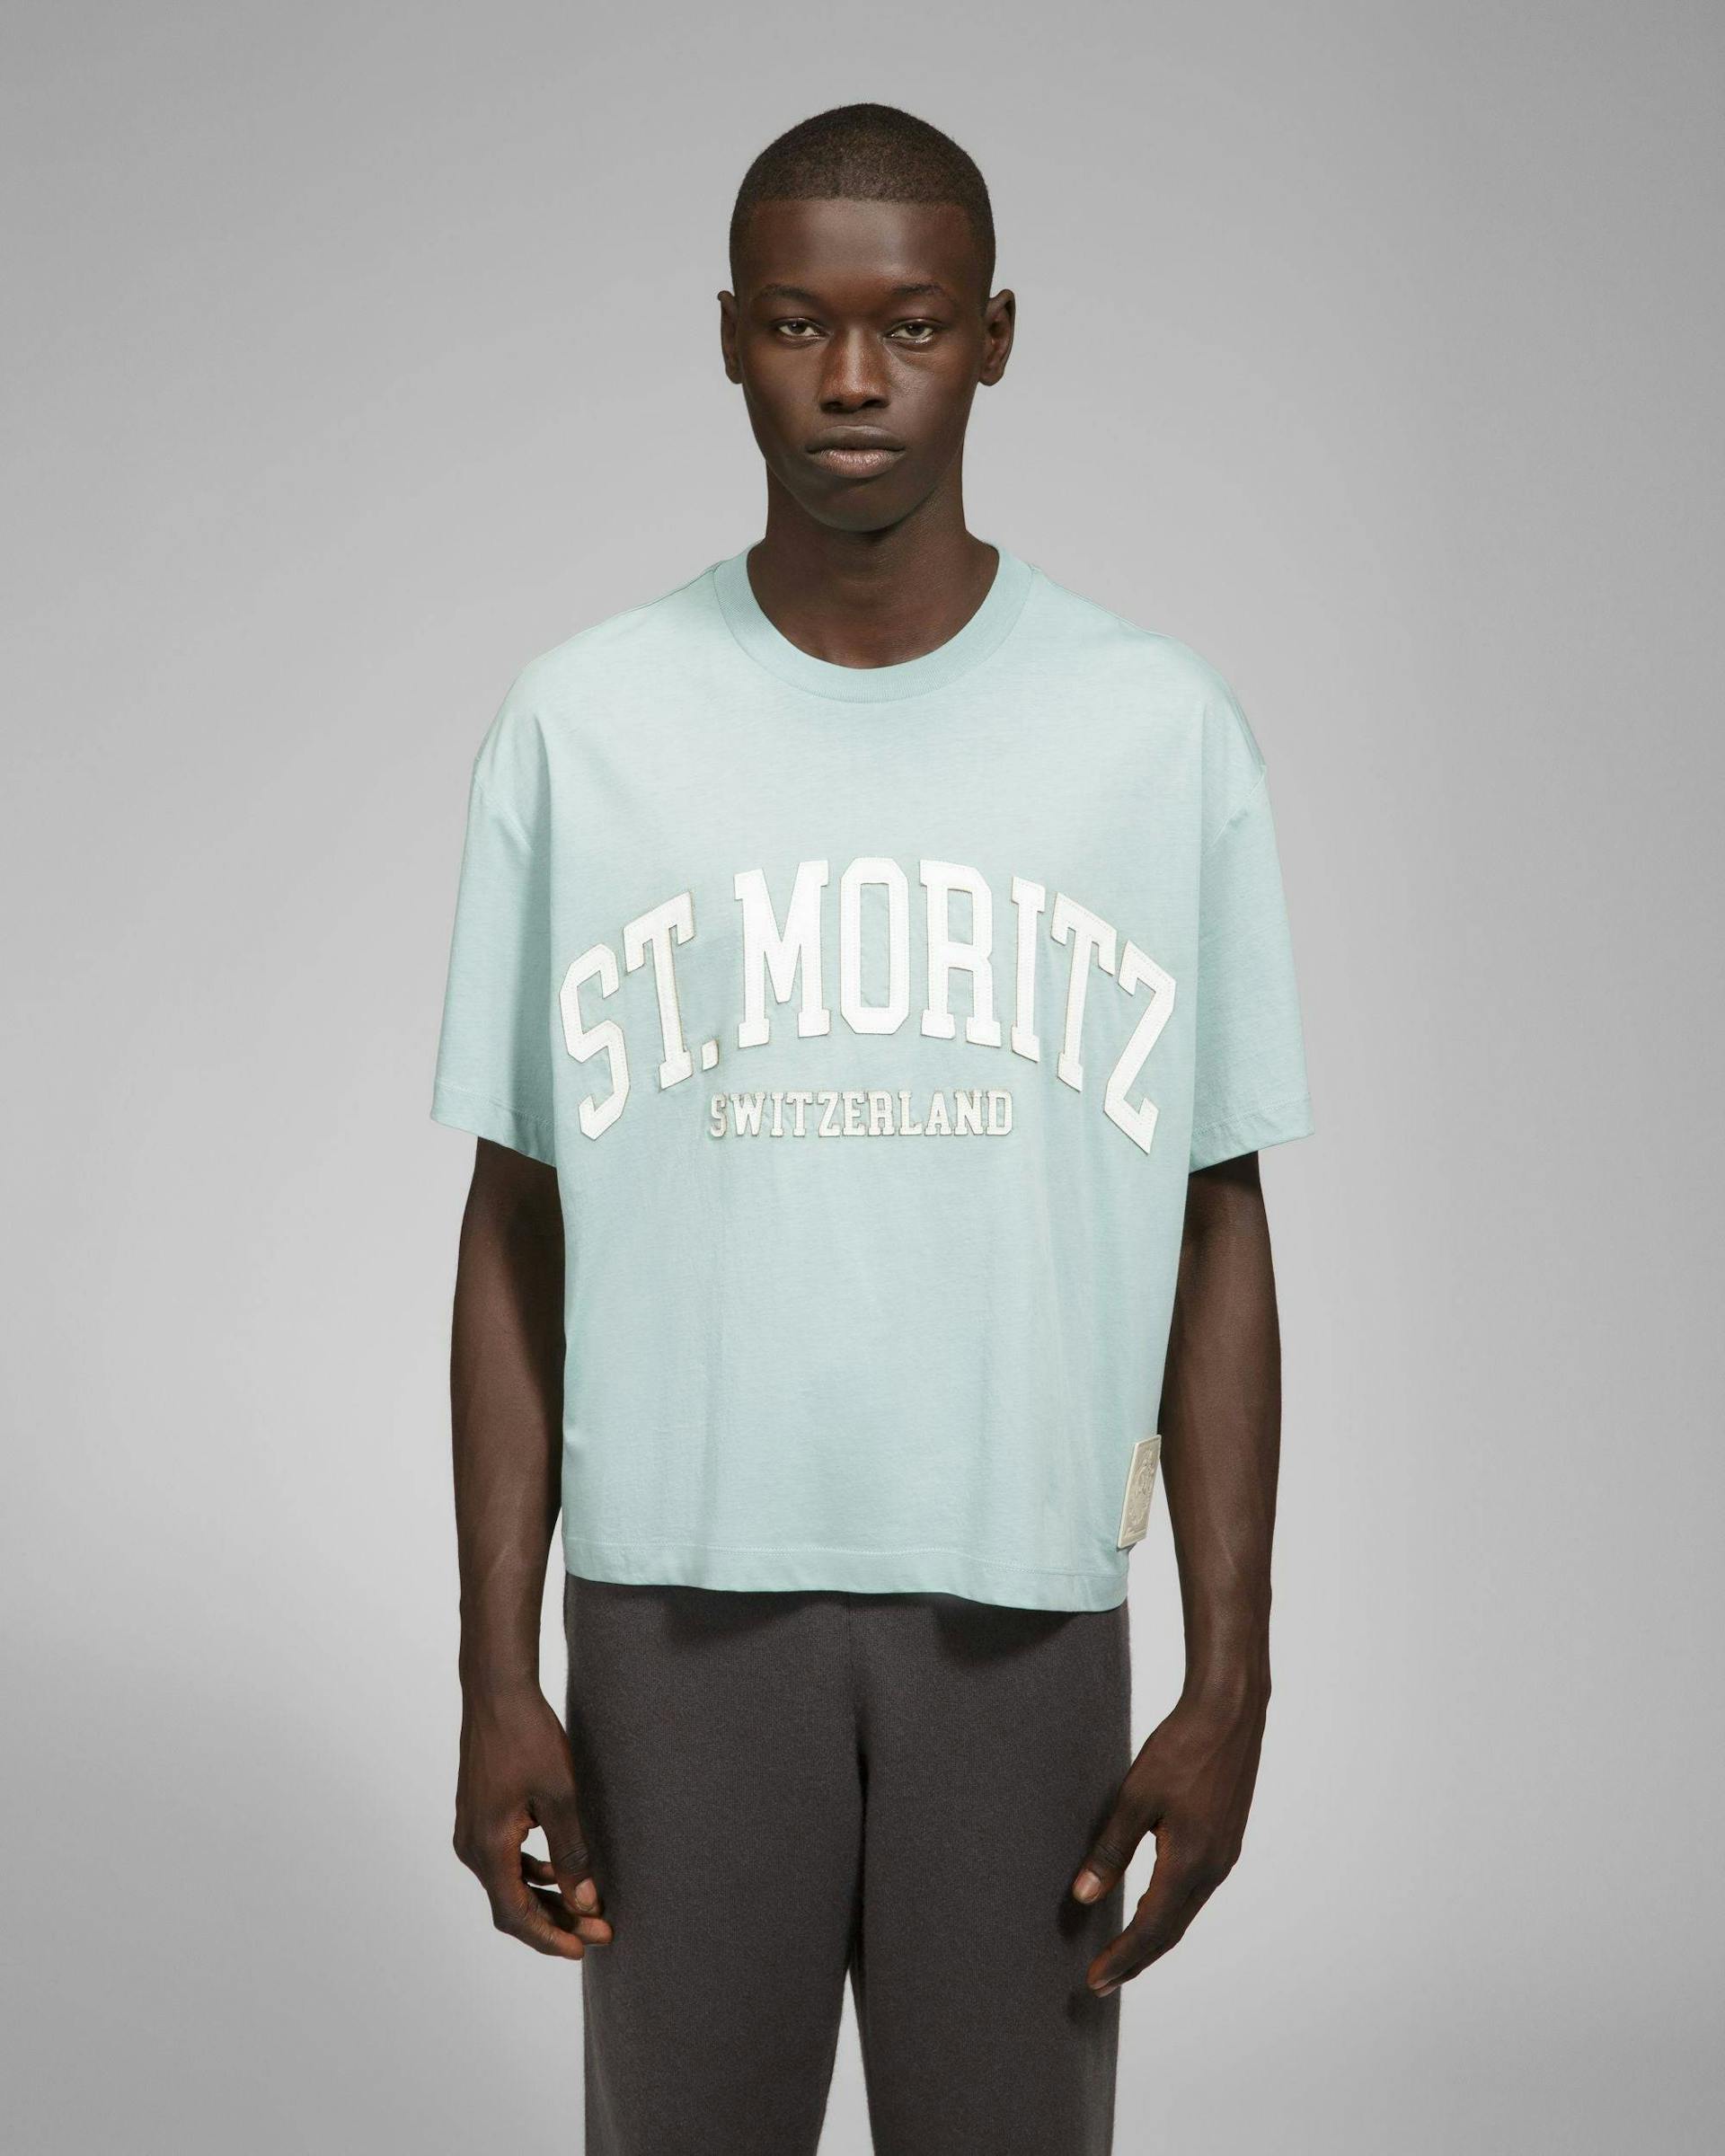 St Moritz T-Shirt - Men's - Bally - 02